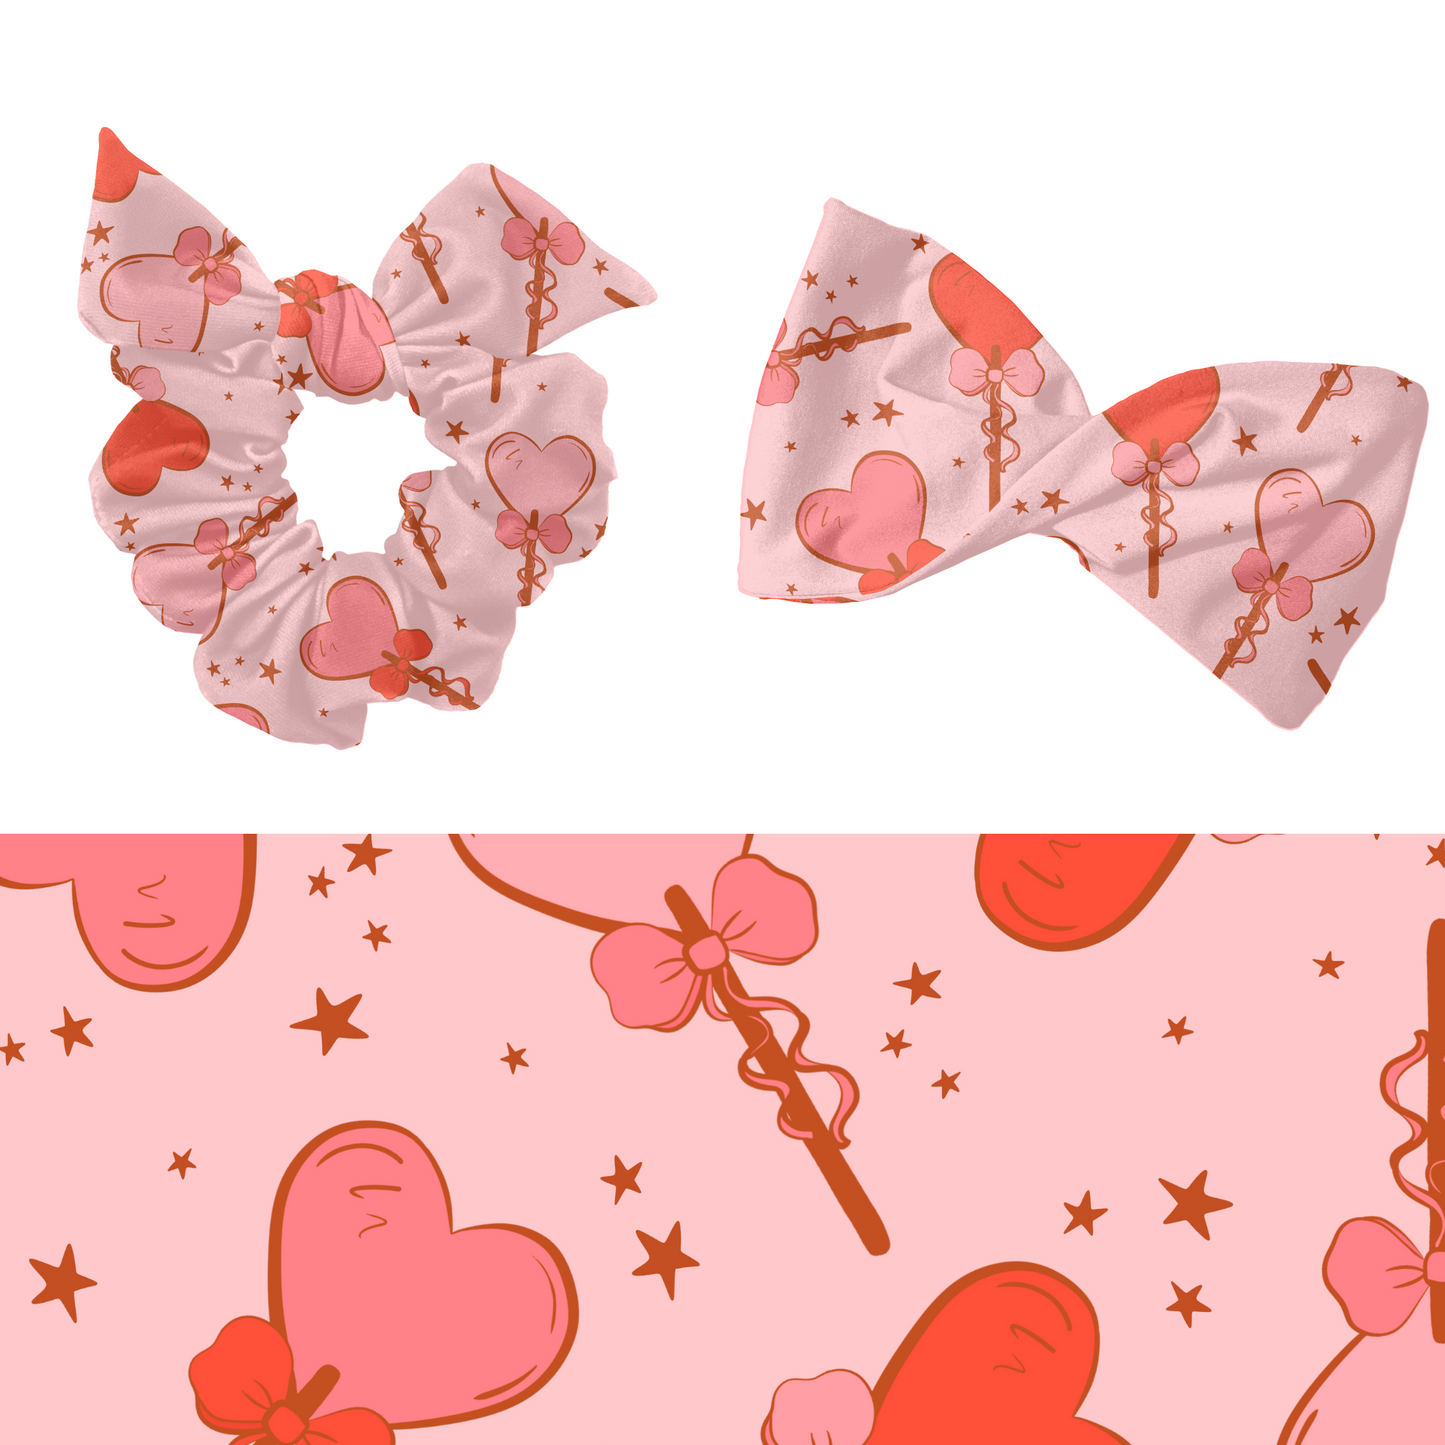 Valentine Candy Pattern Design